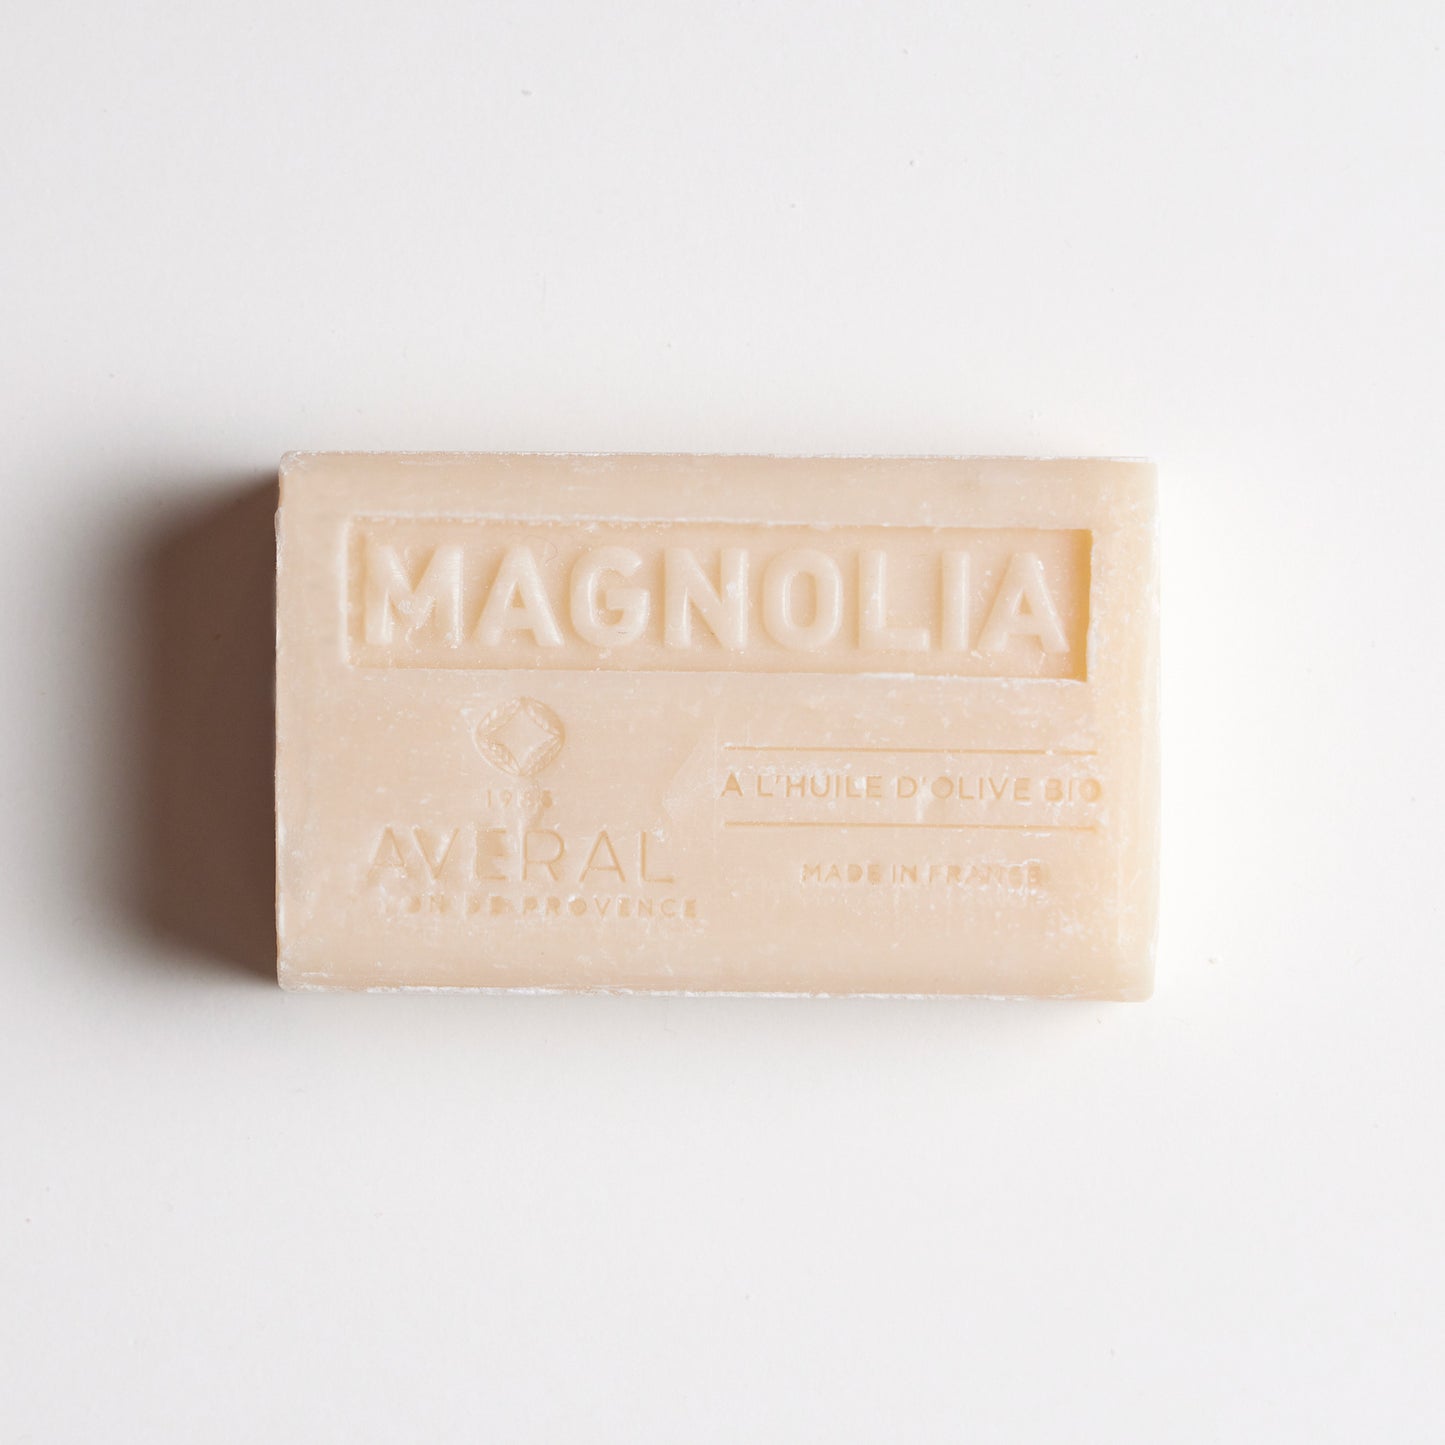 Magnolia French Soap